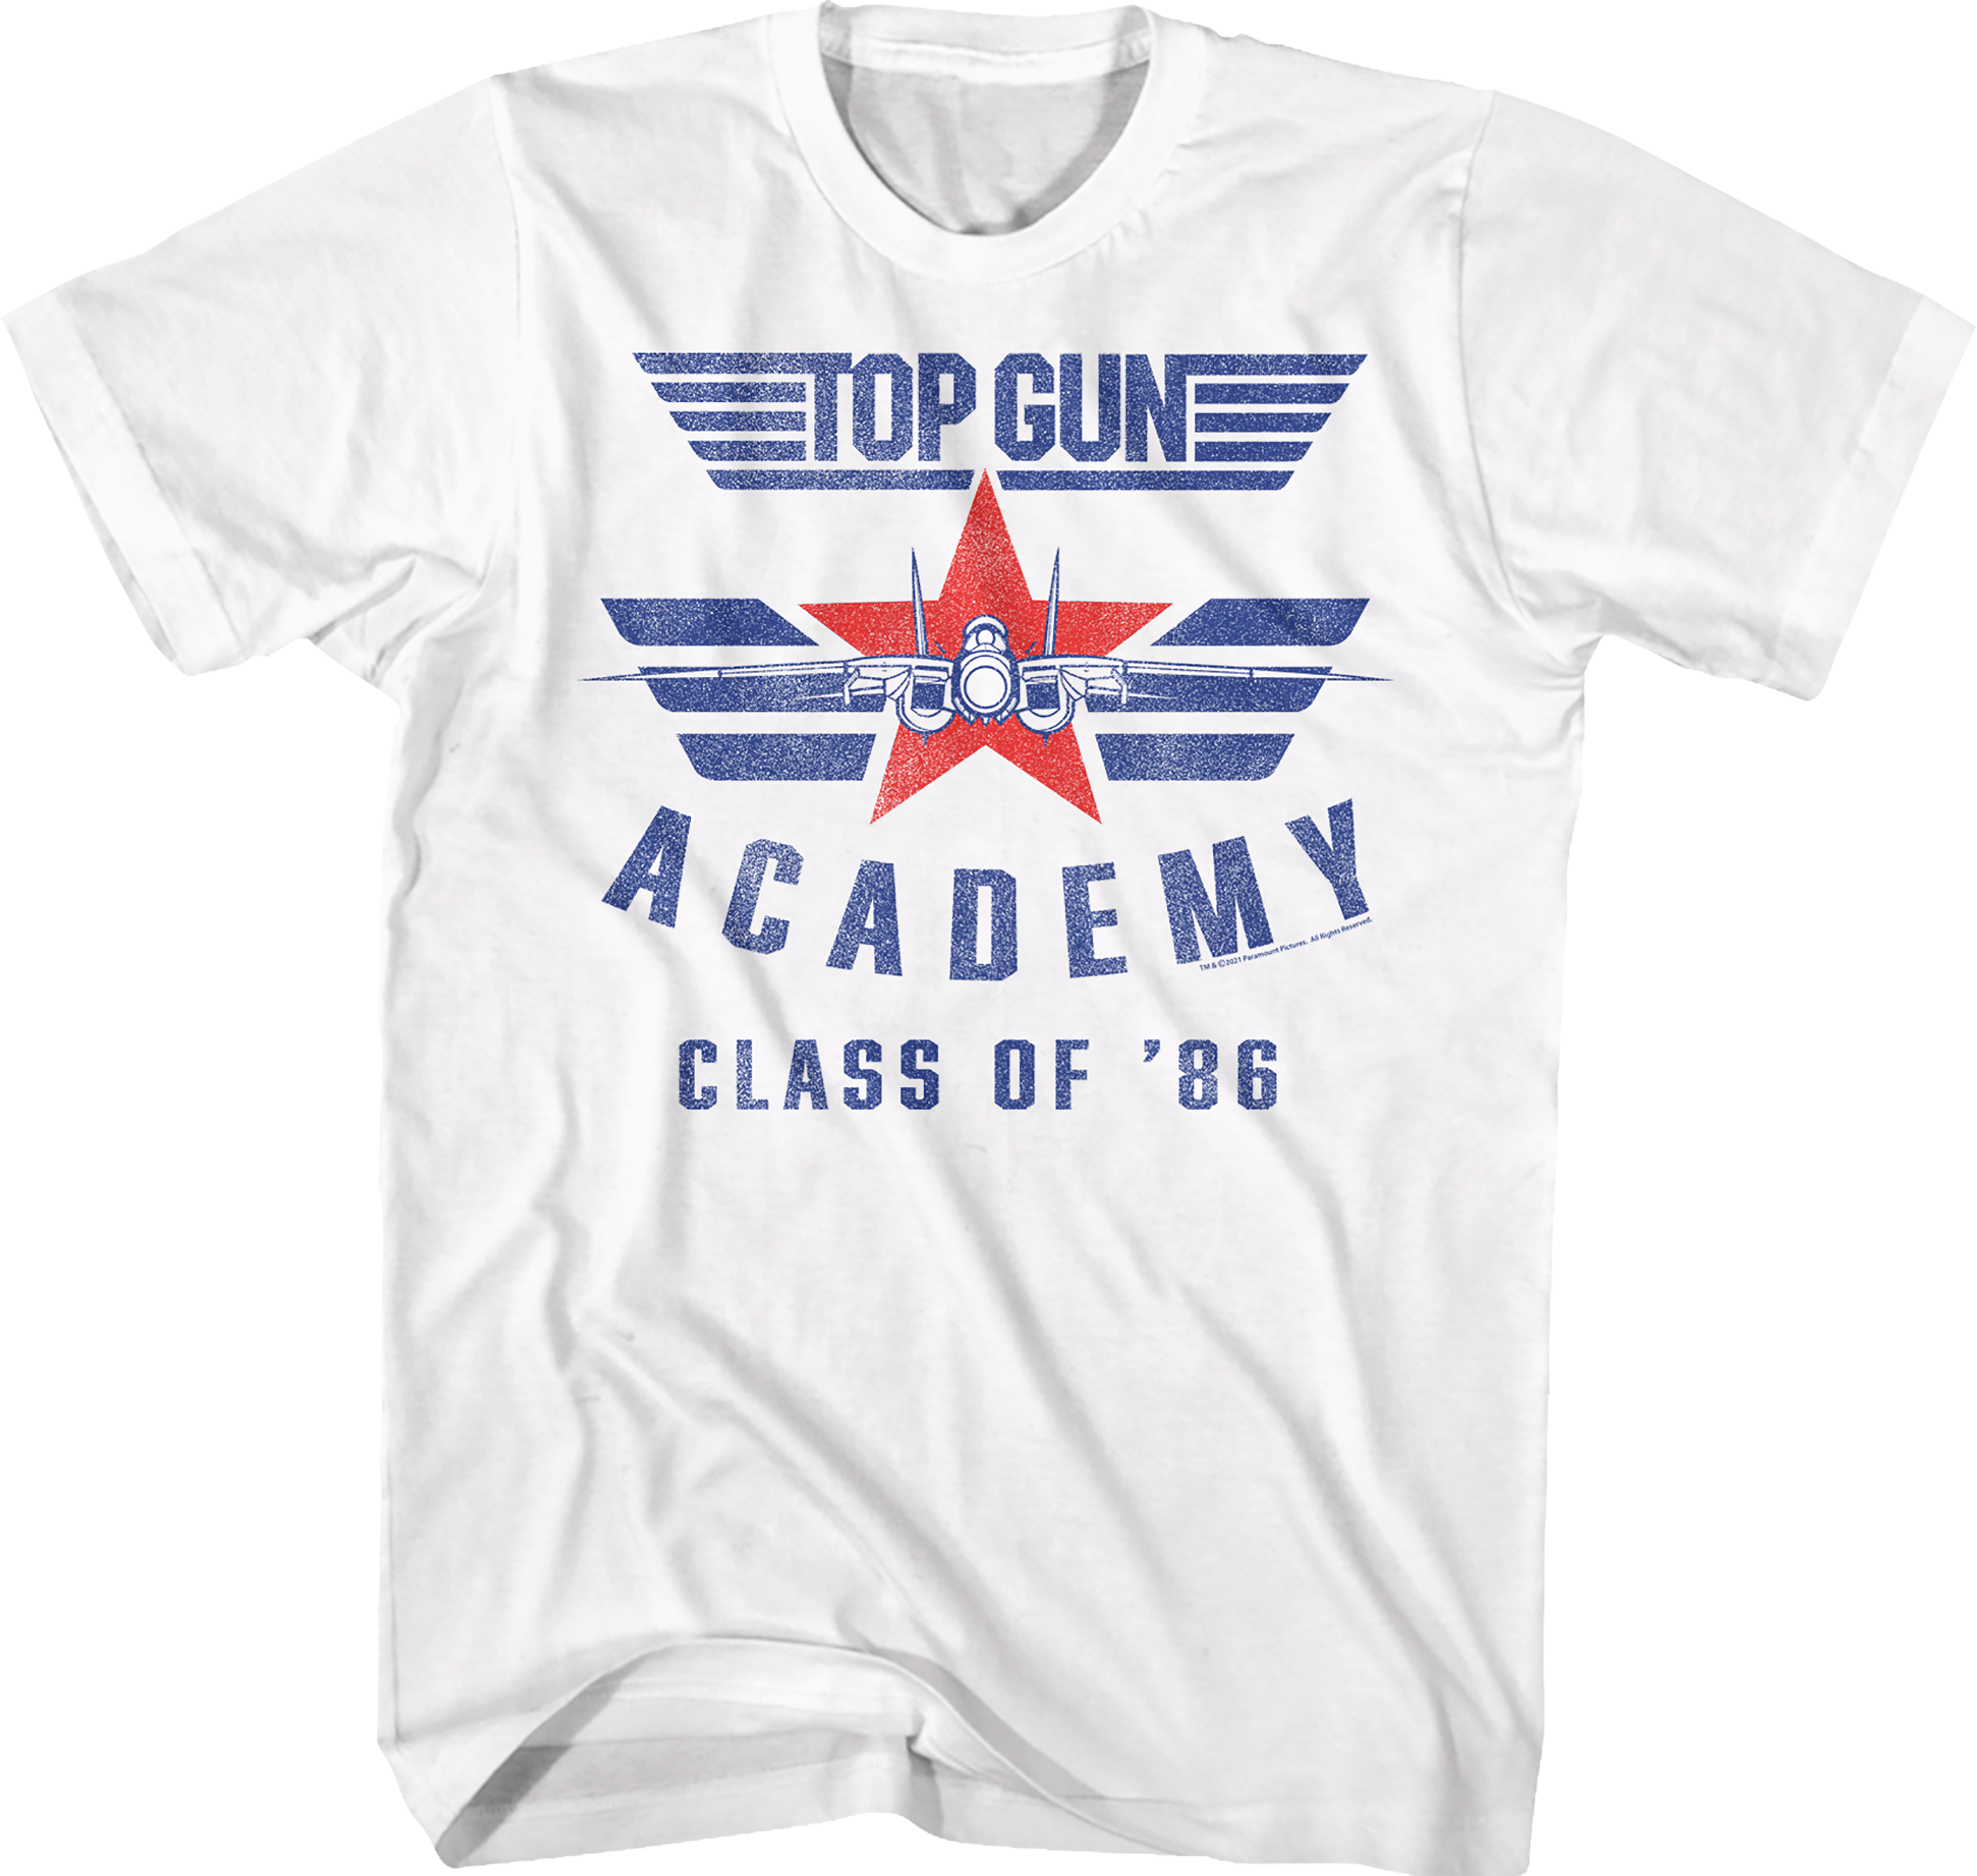 Academy Class Of '86 Top Gun T-Shirt